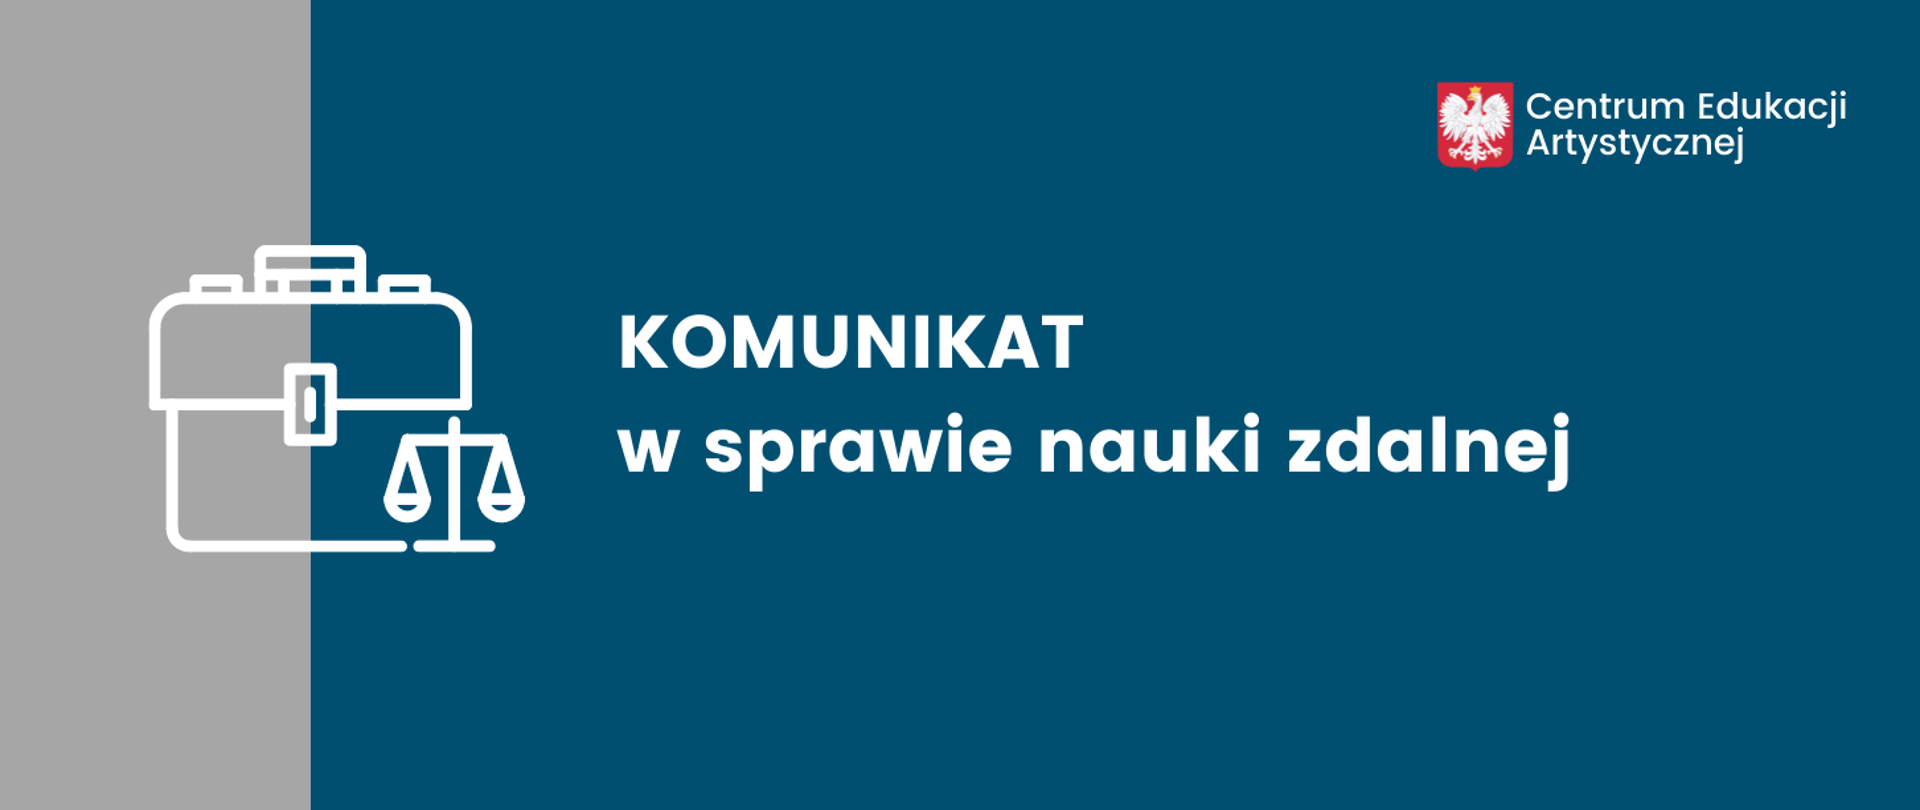 Niebiesko-szara grafika z ikoną teczki i wagi prawniczej z tekstem "KOMUNIKAT w sprawie nauki zdalnej". W prawym górnym rogu godło polski i napis Centrum Edukacji Artystycznej.